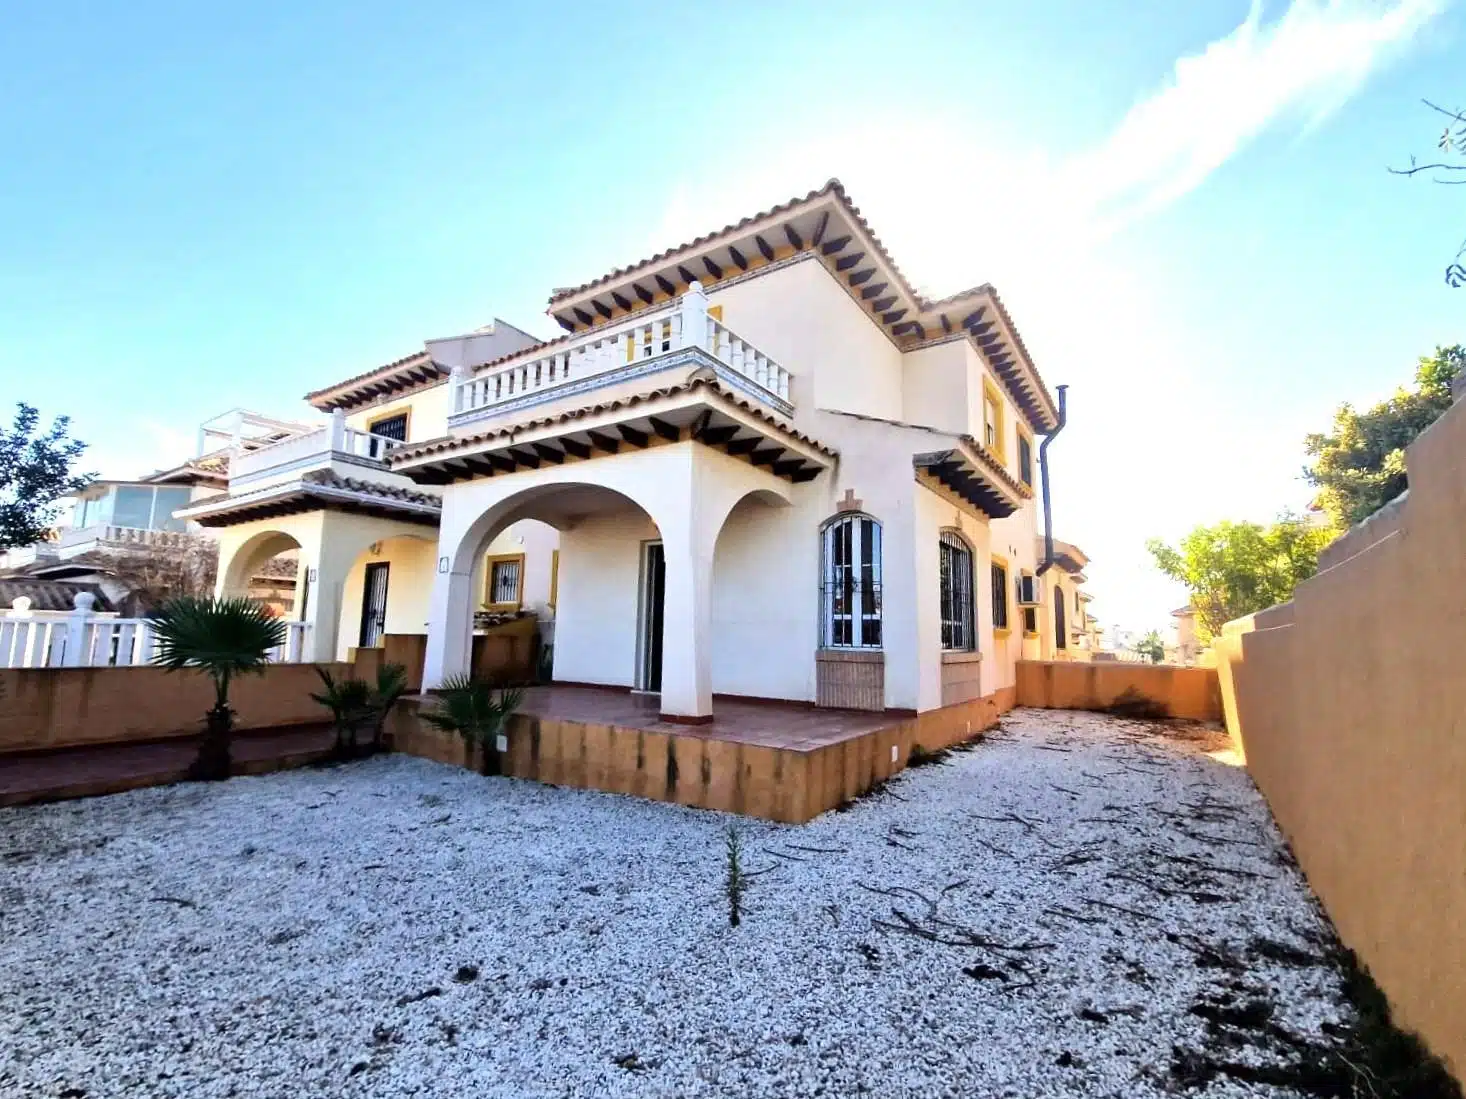 Resale Huis Te koop in Orihuela-Costa in Spanje, gelegen aan de Costa Blanca-Zuid